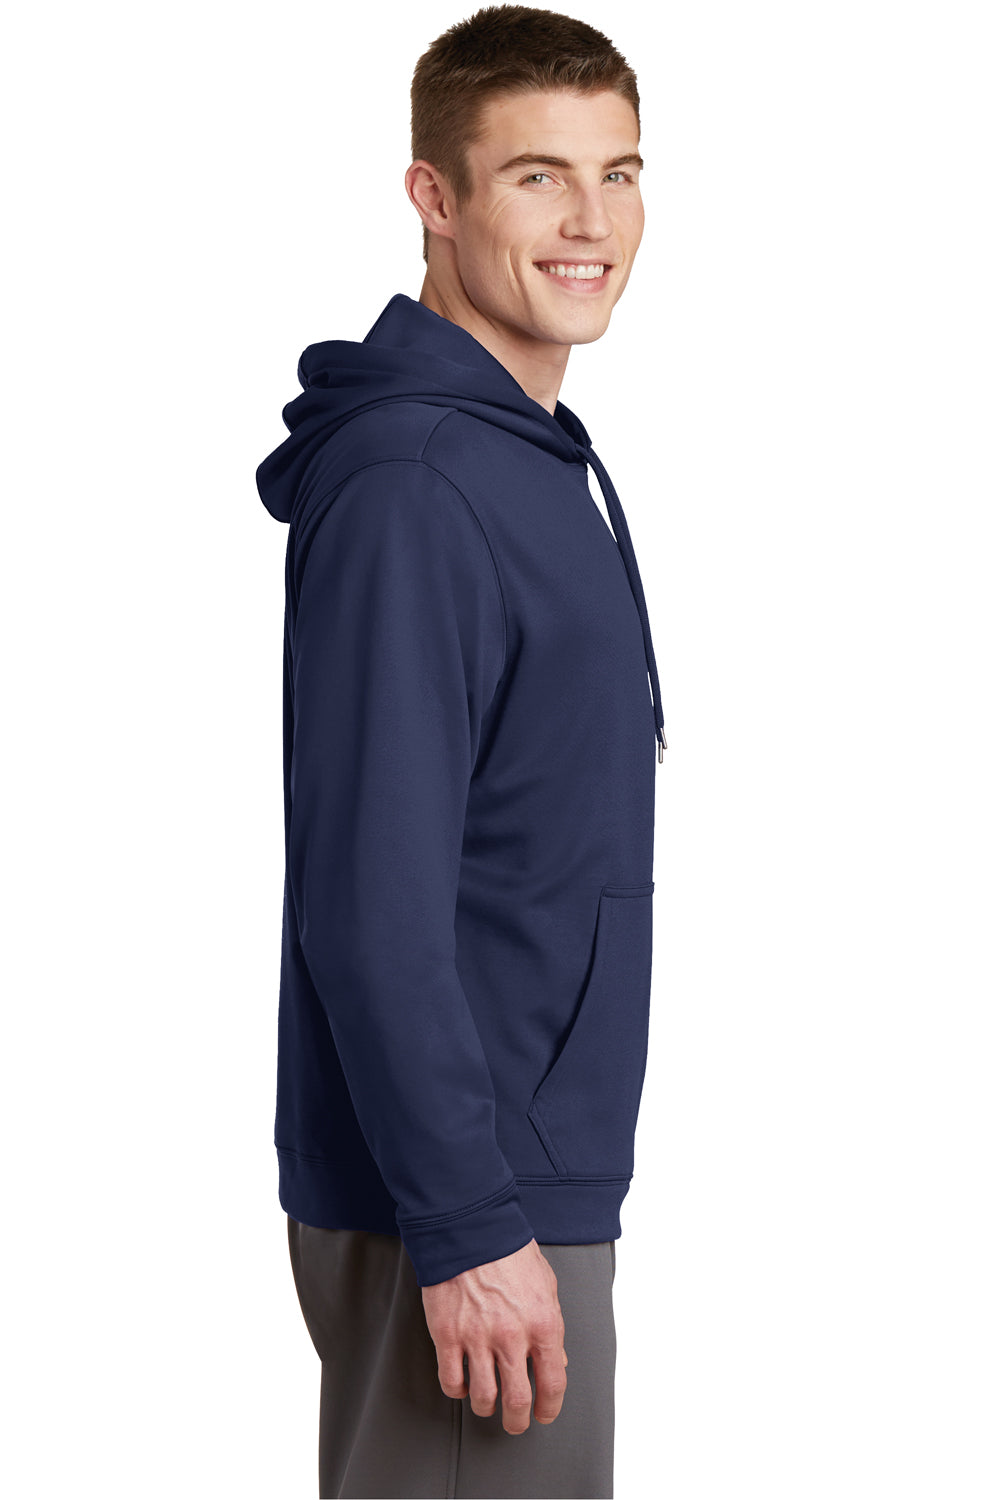 Sport-Tek F244 Mens Sport-Wick Moisture Wicking Fleece Hooded Sweatshirt Hoodie Navy Blue Side